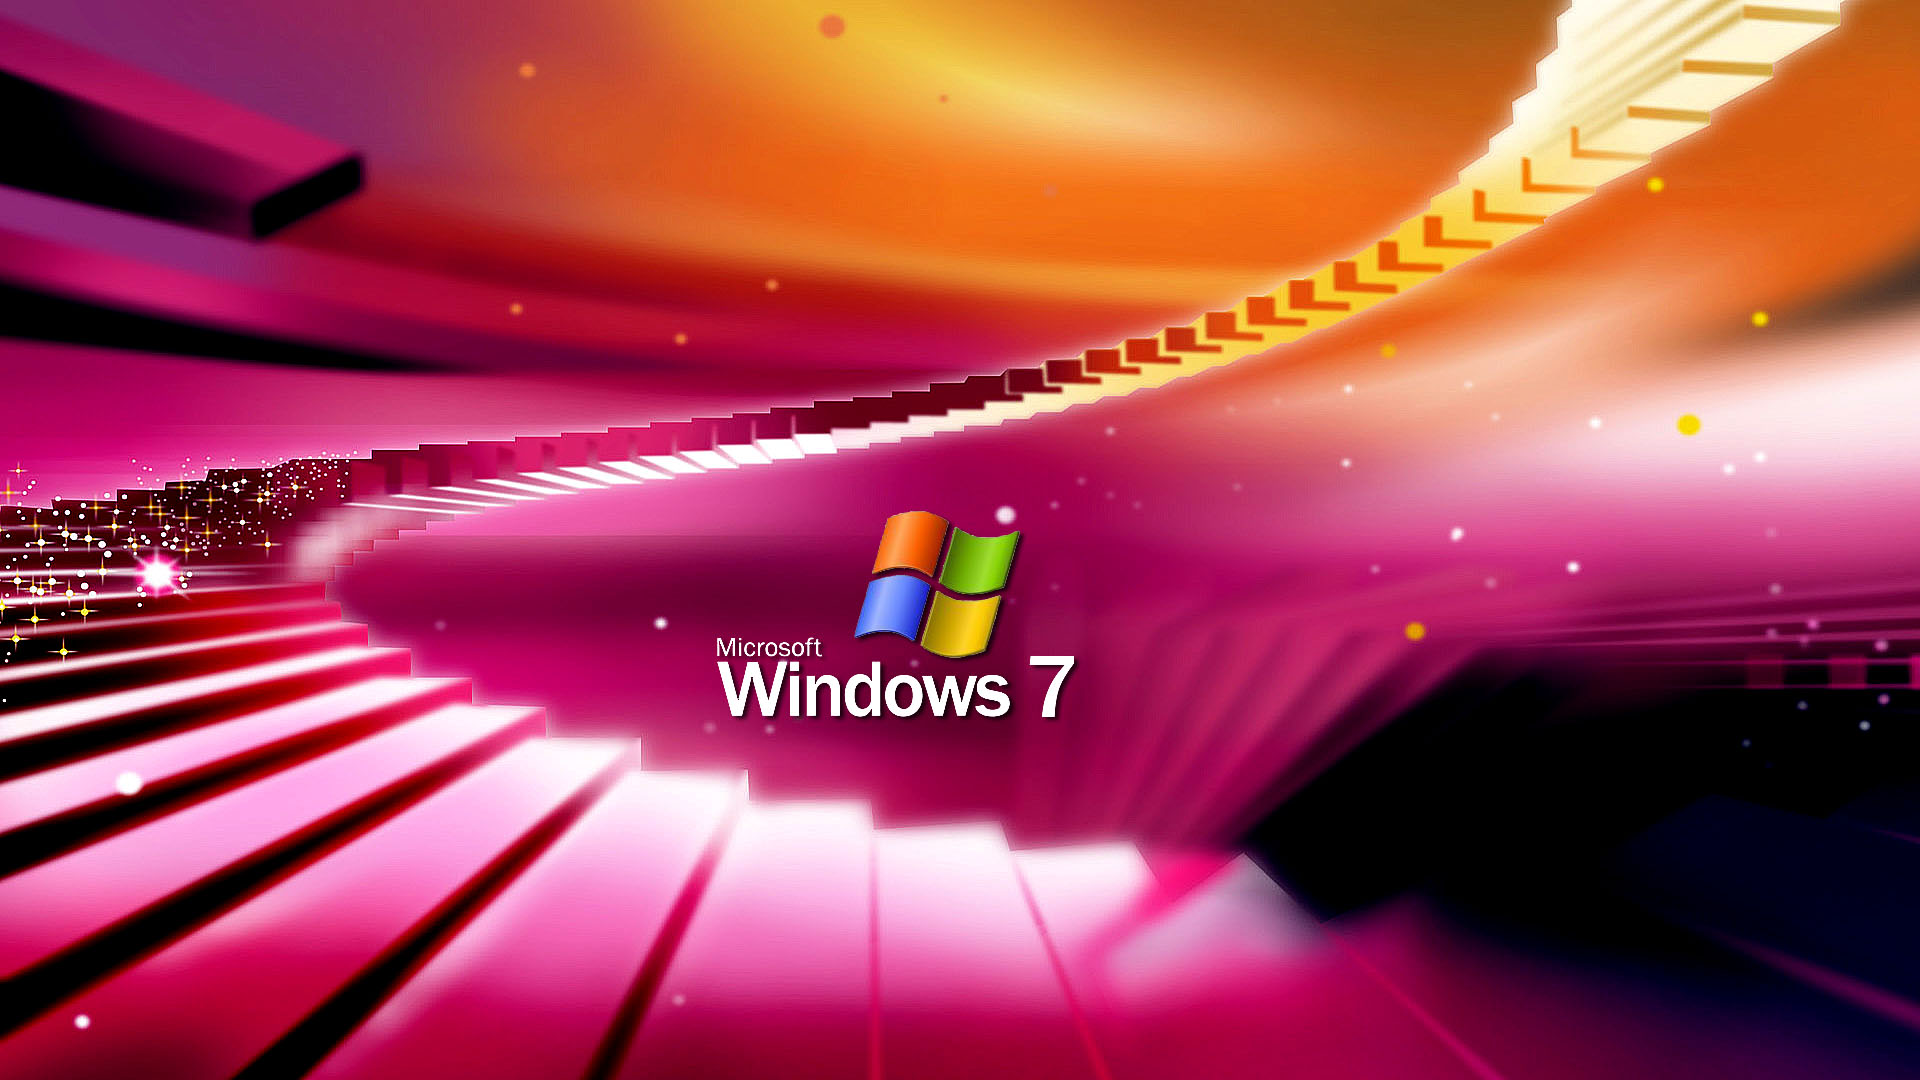 Hãy tải miễn phí bộ sưu tập hình nền Windows 7 cực đẹp với đầy đủ màu sắc và độ phân giải cao HD